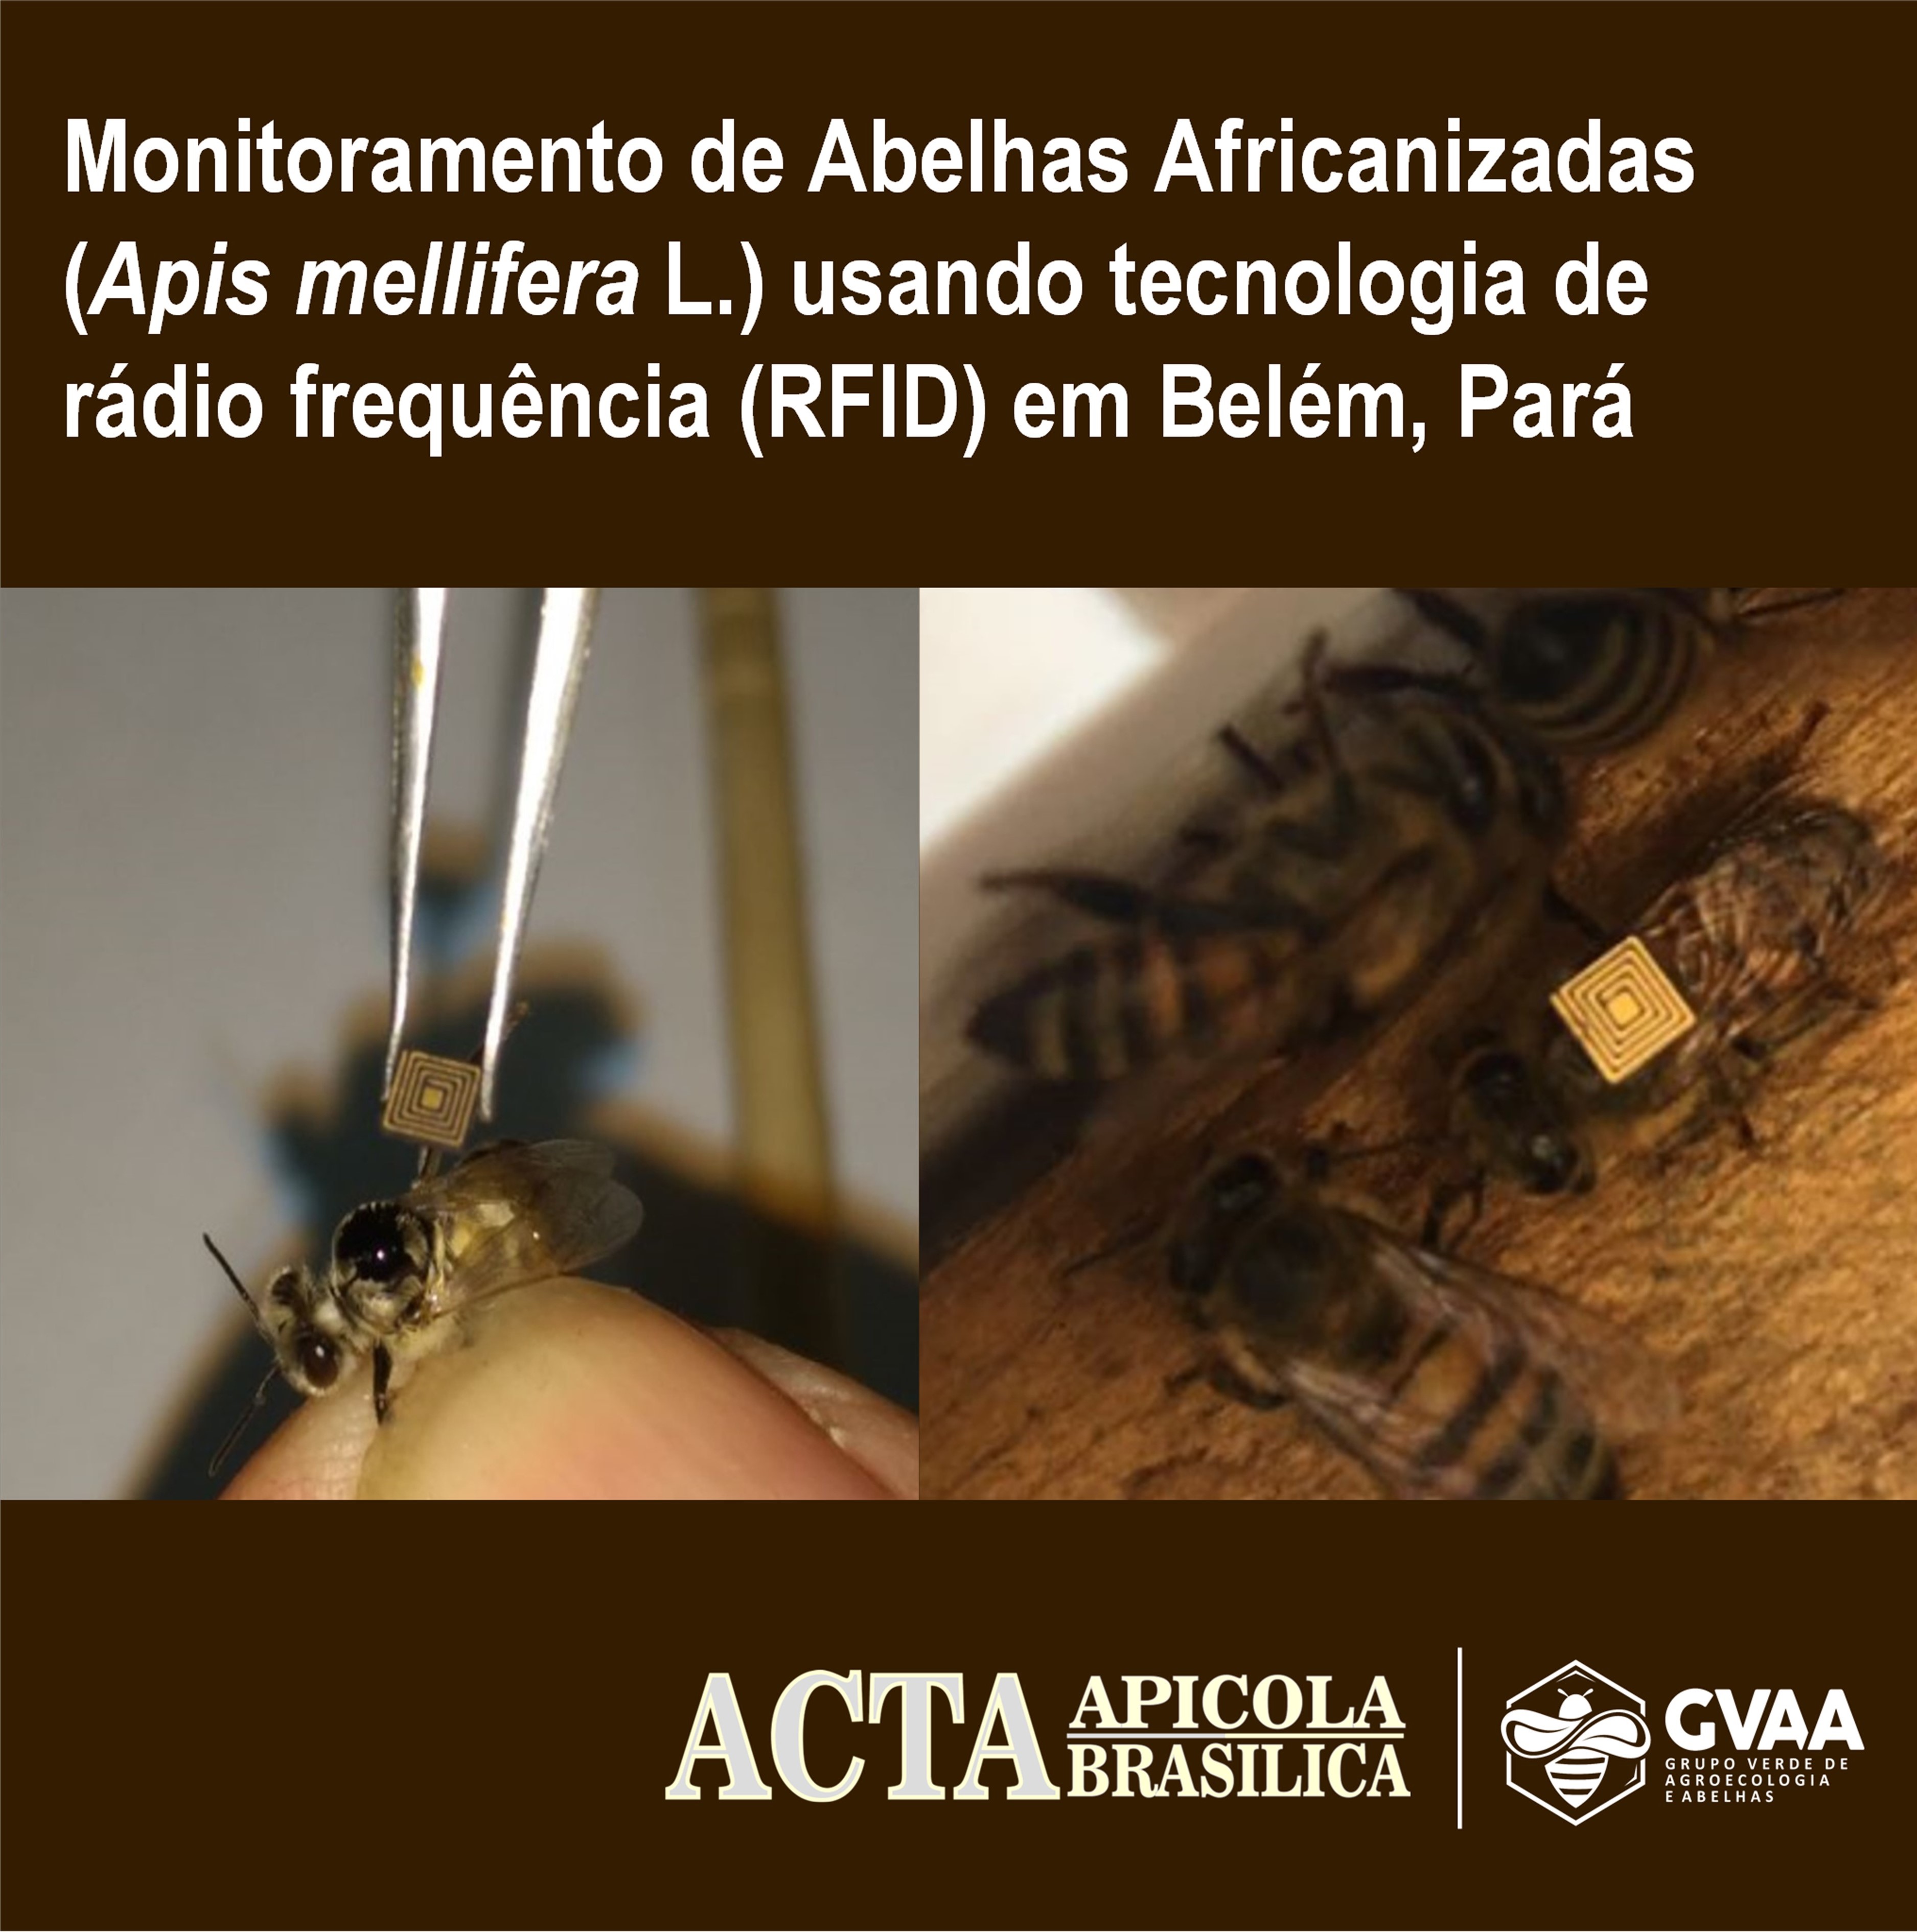 Monitoramento de Abelhas Africanizadas (Apis mellifera L.) usando tecnologia de rádio frequência (RFID) em Belém, Pará